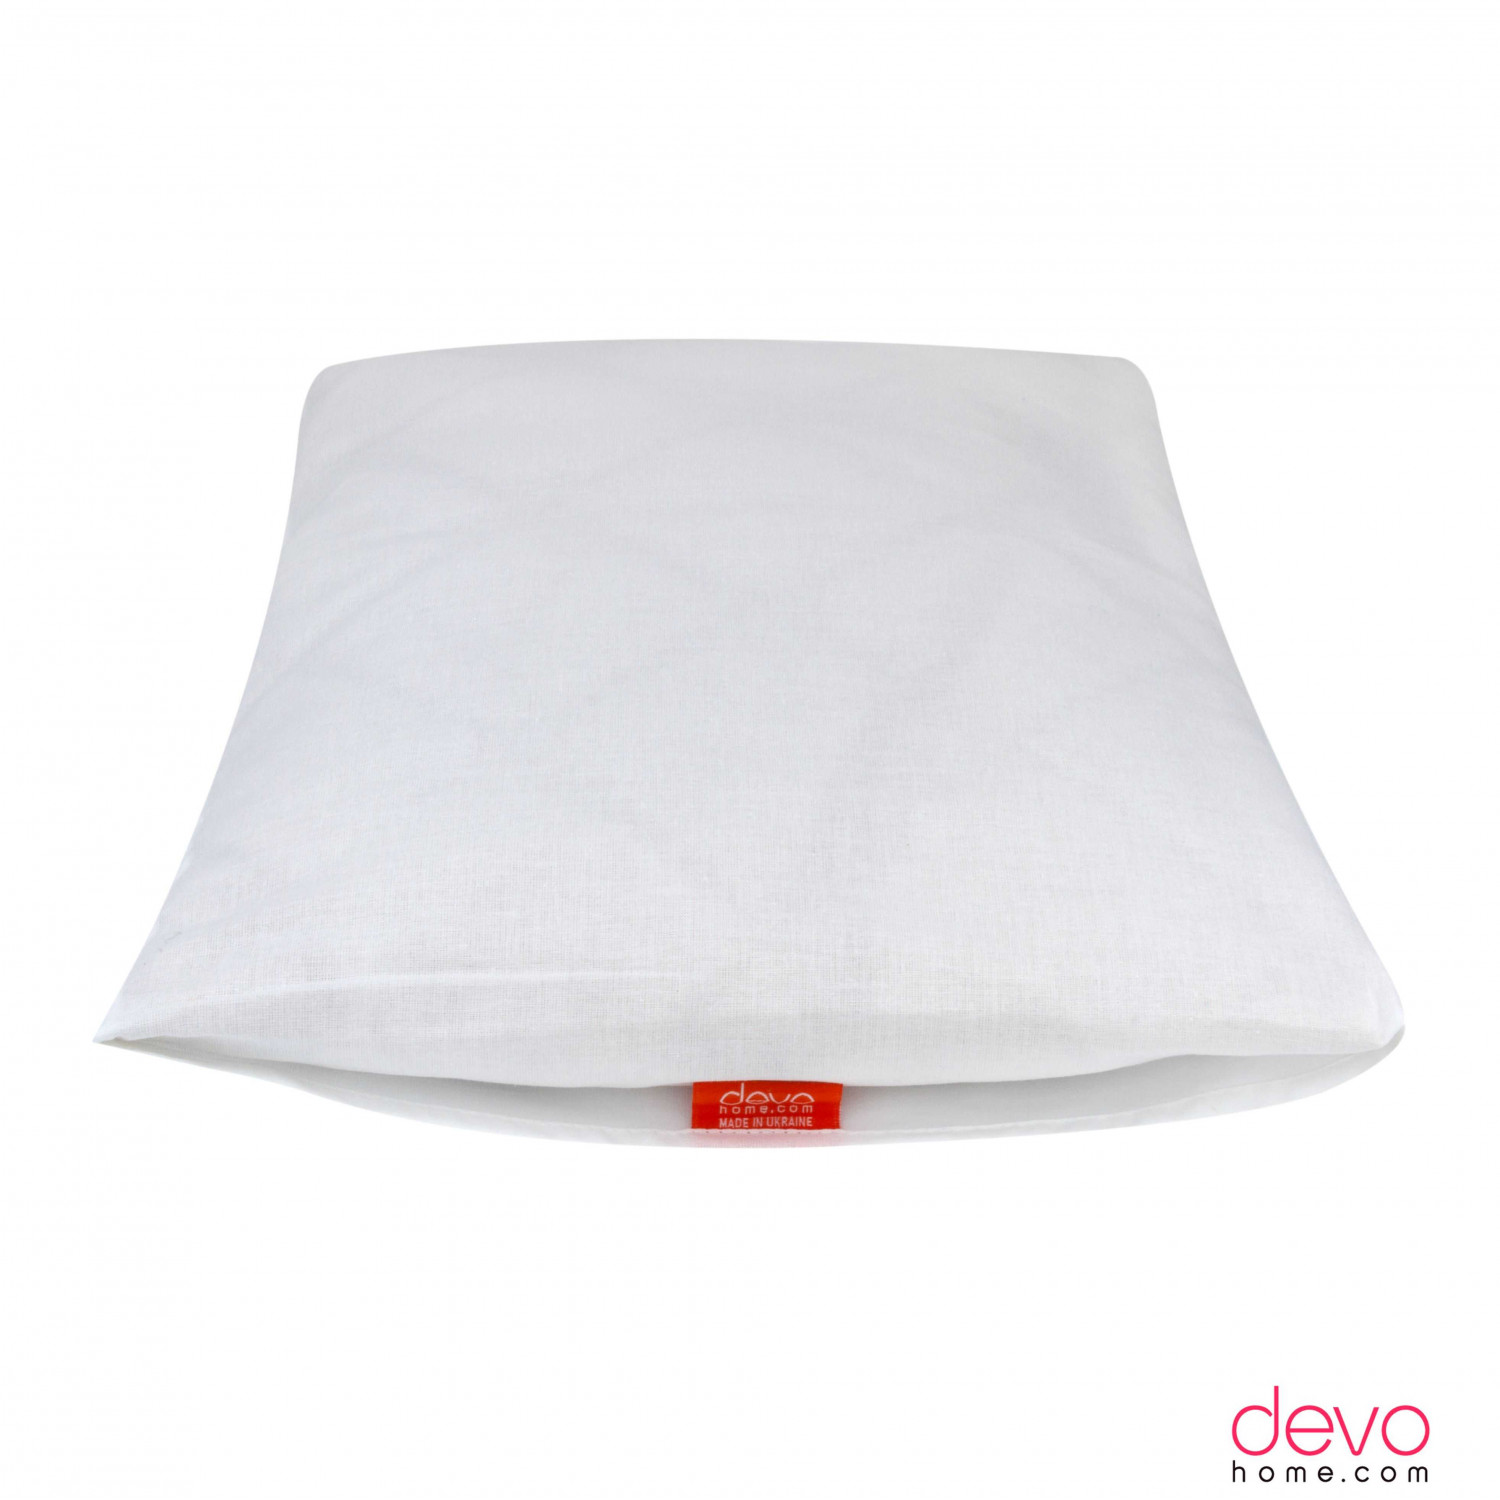 White pillowcase 35x45